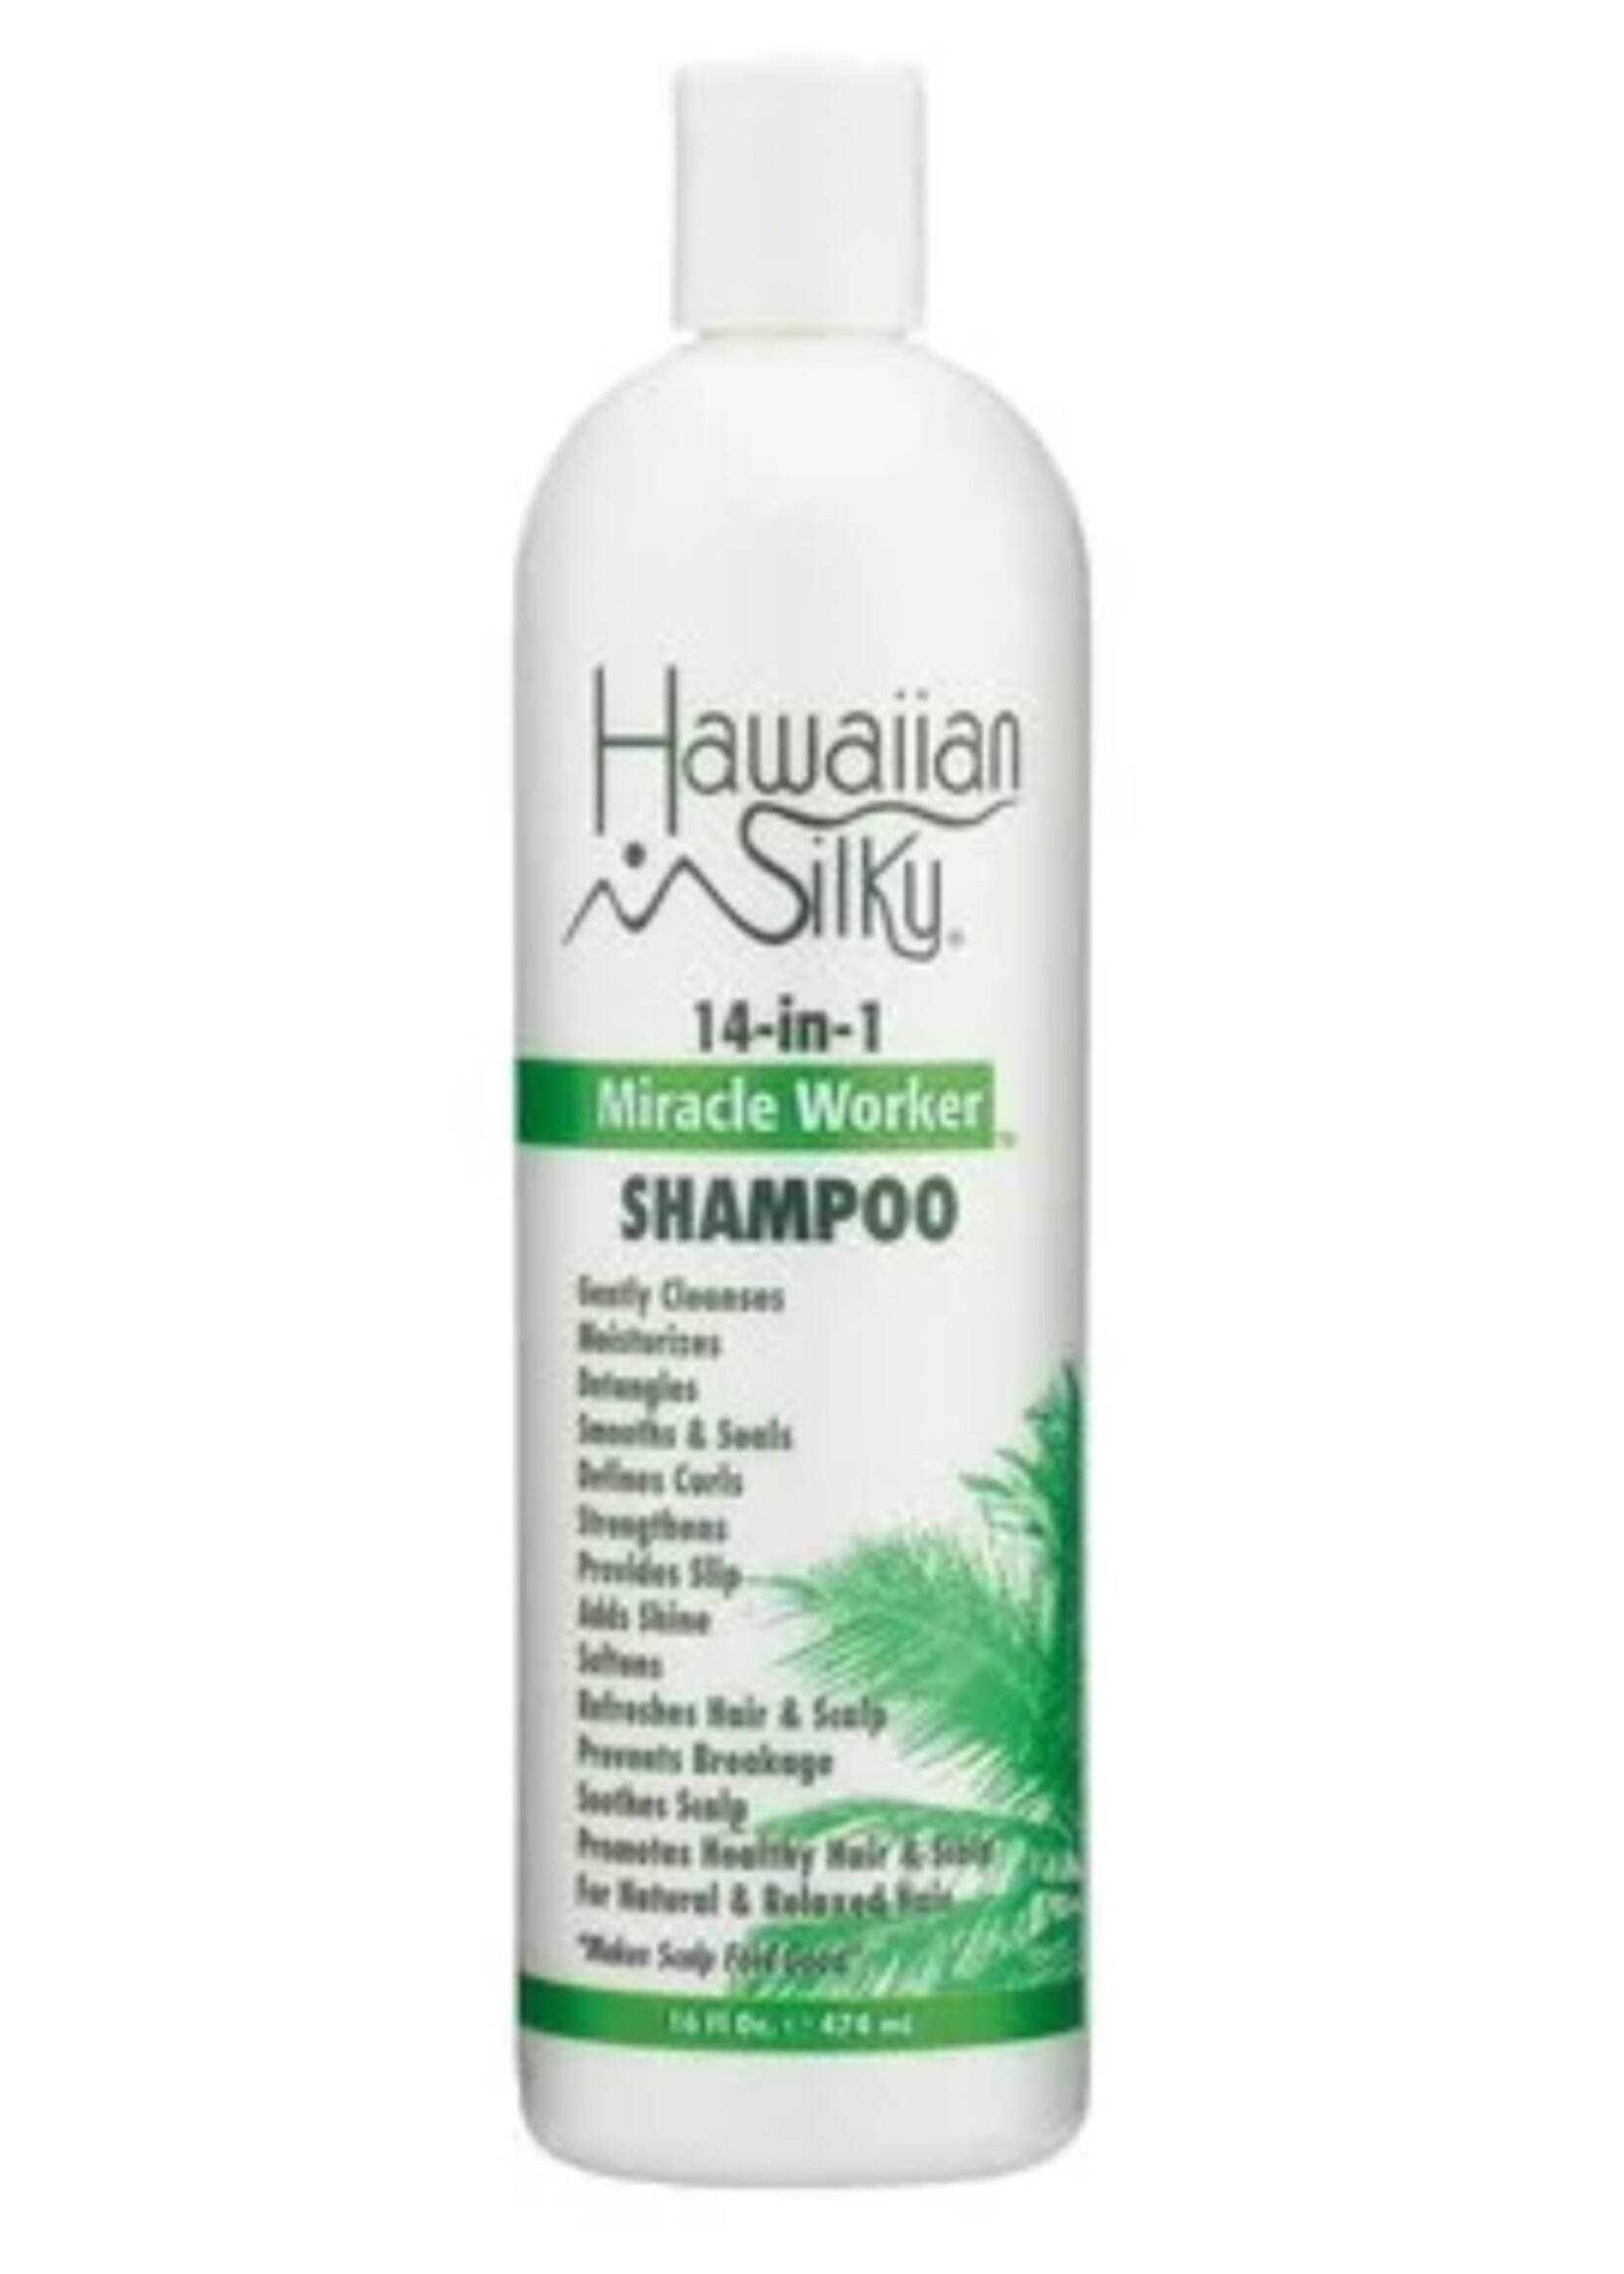 Hawaiian Silky Miracle Worker Shampoo  16oz